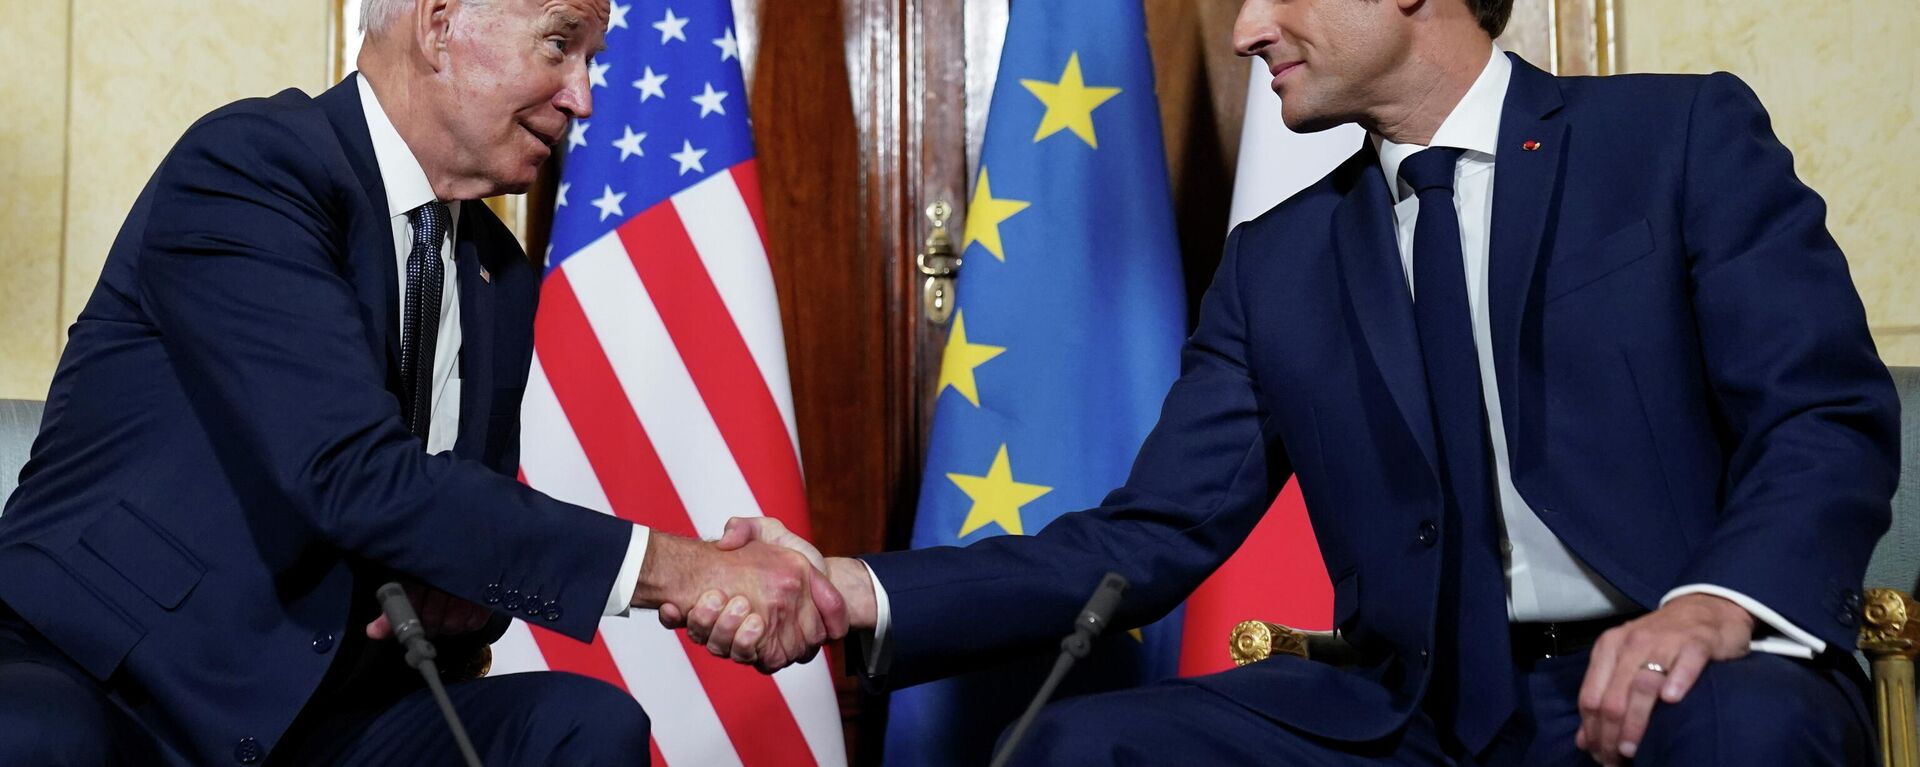 Joe Biden, presidente de EEUU, y Emmanuel Macron, presidente de Francia, antes del encuentro G20 en Roma (Italia), el 29 de octubre del 2021 - Sputnik Mundo, 1920, 30.10.2021